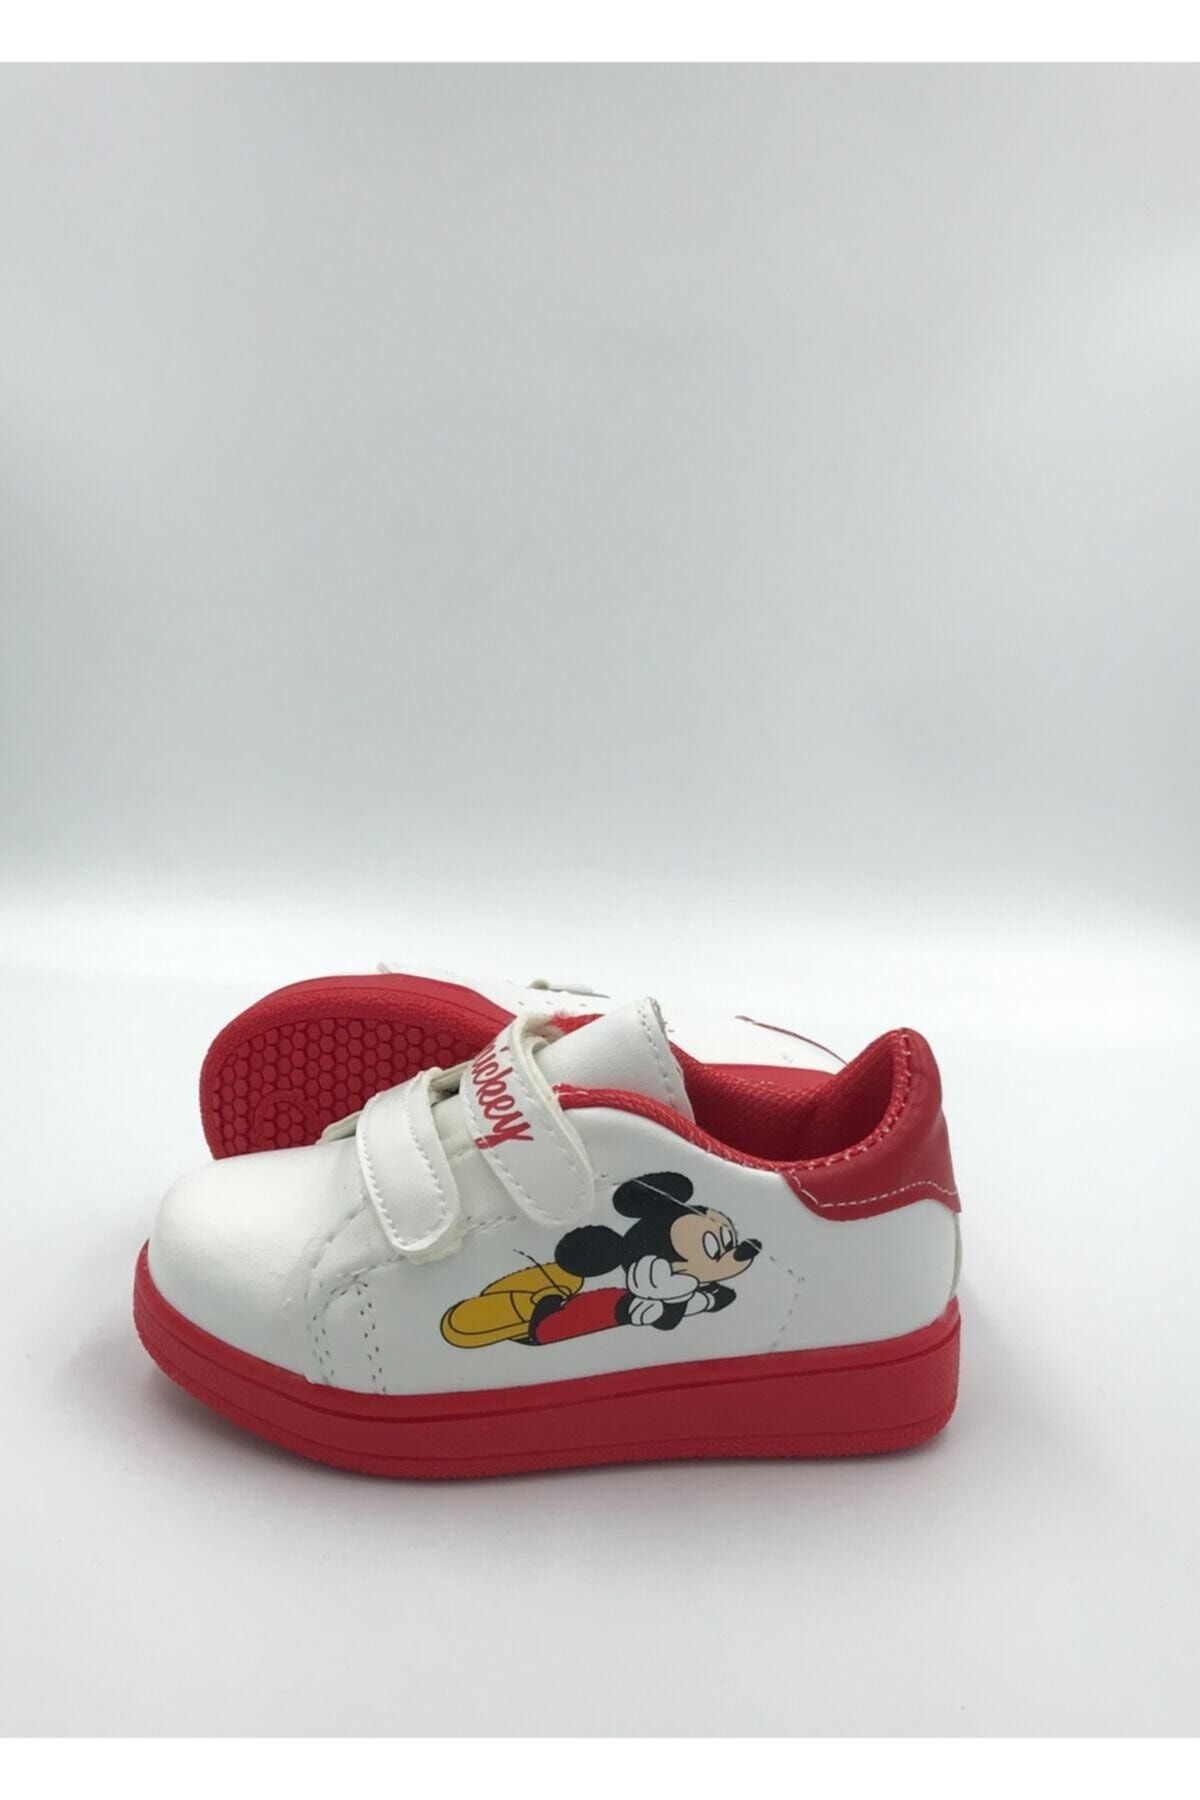 DARKLOW Md-01 Mickey Desenli Çocuk Spor Sneaker Günlük Cırtlı Spor Ayakkabı Beyaz-kırmızı